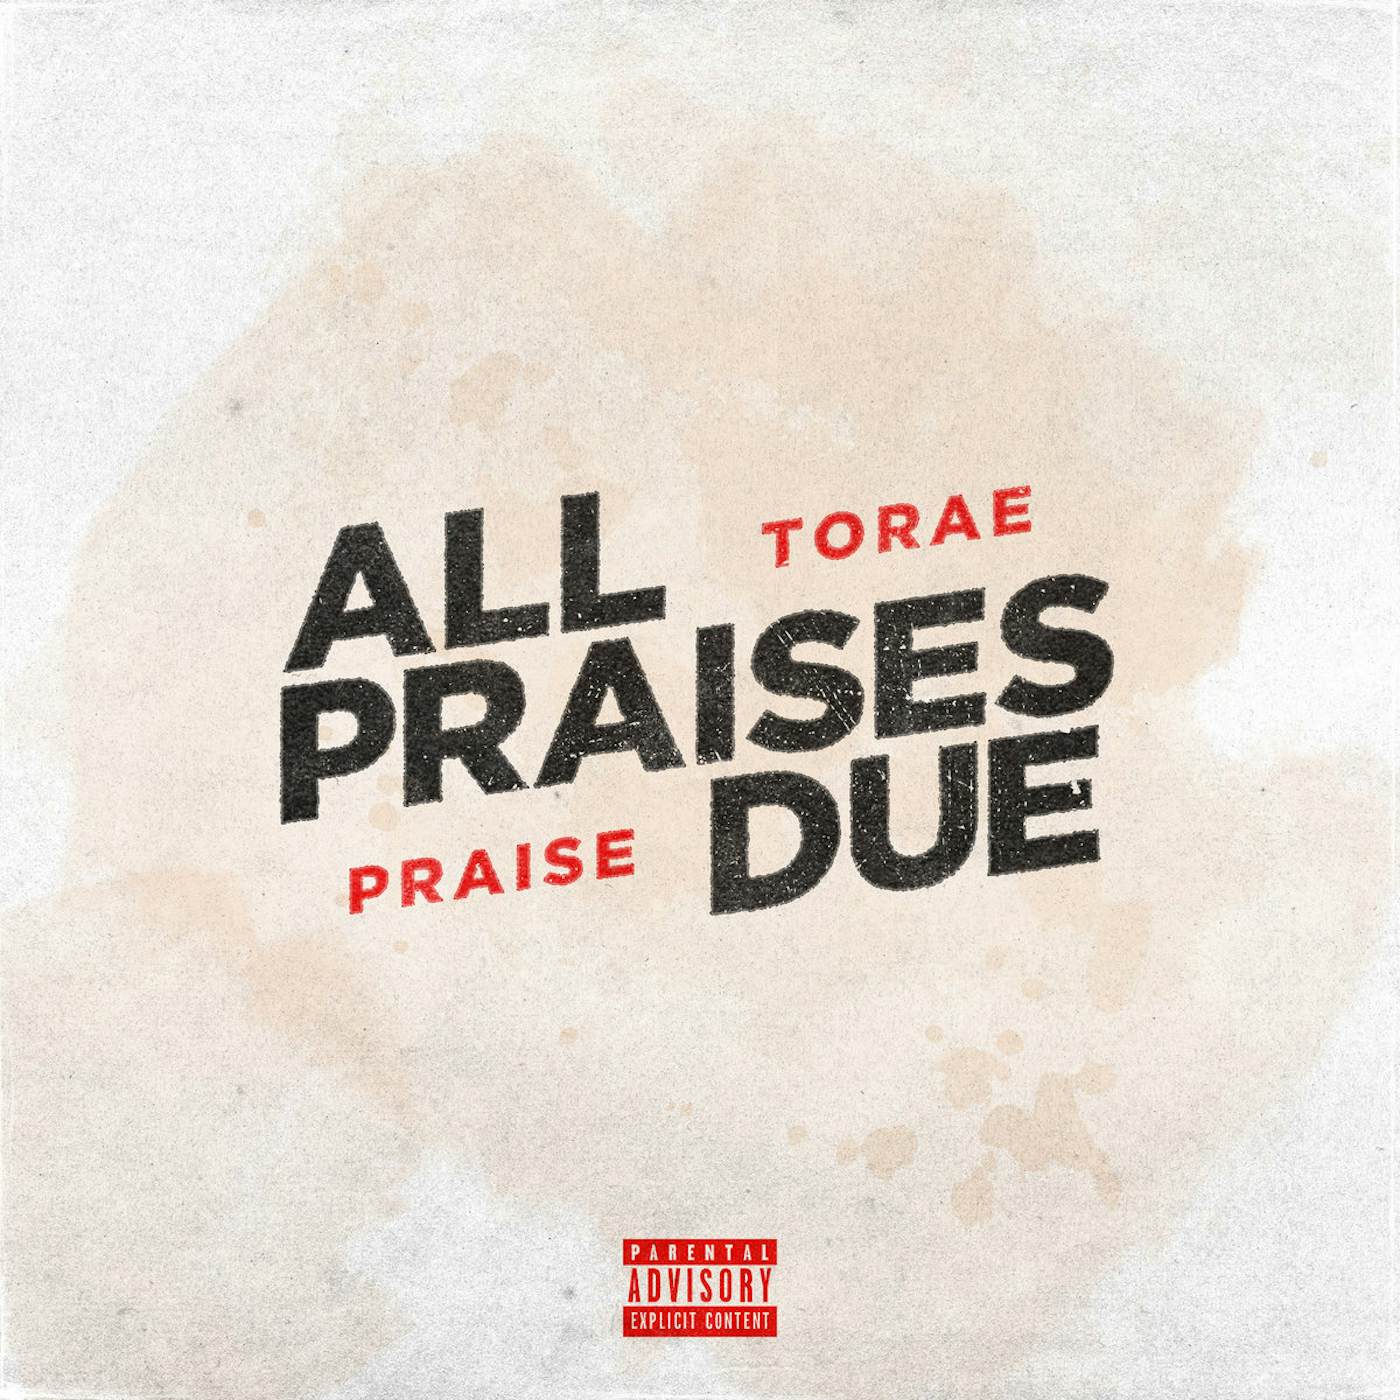 Torae All Praises Due Vinyl Record